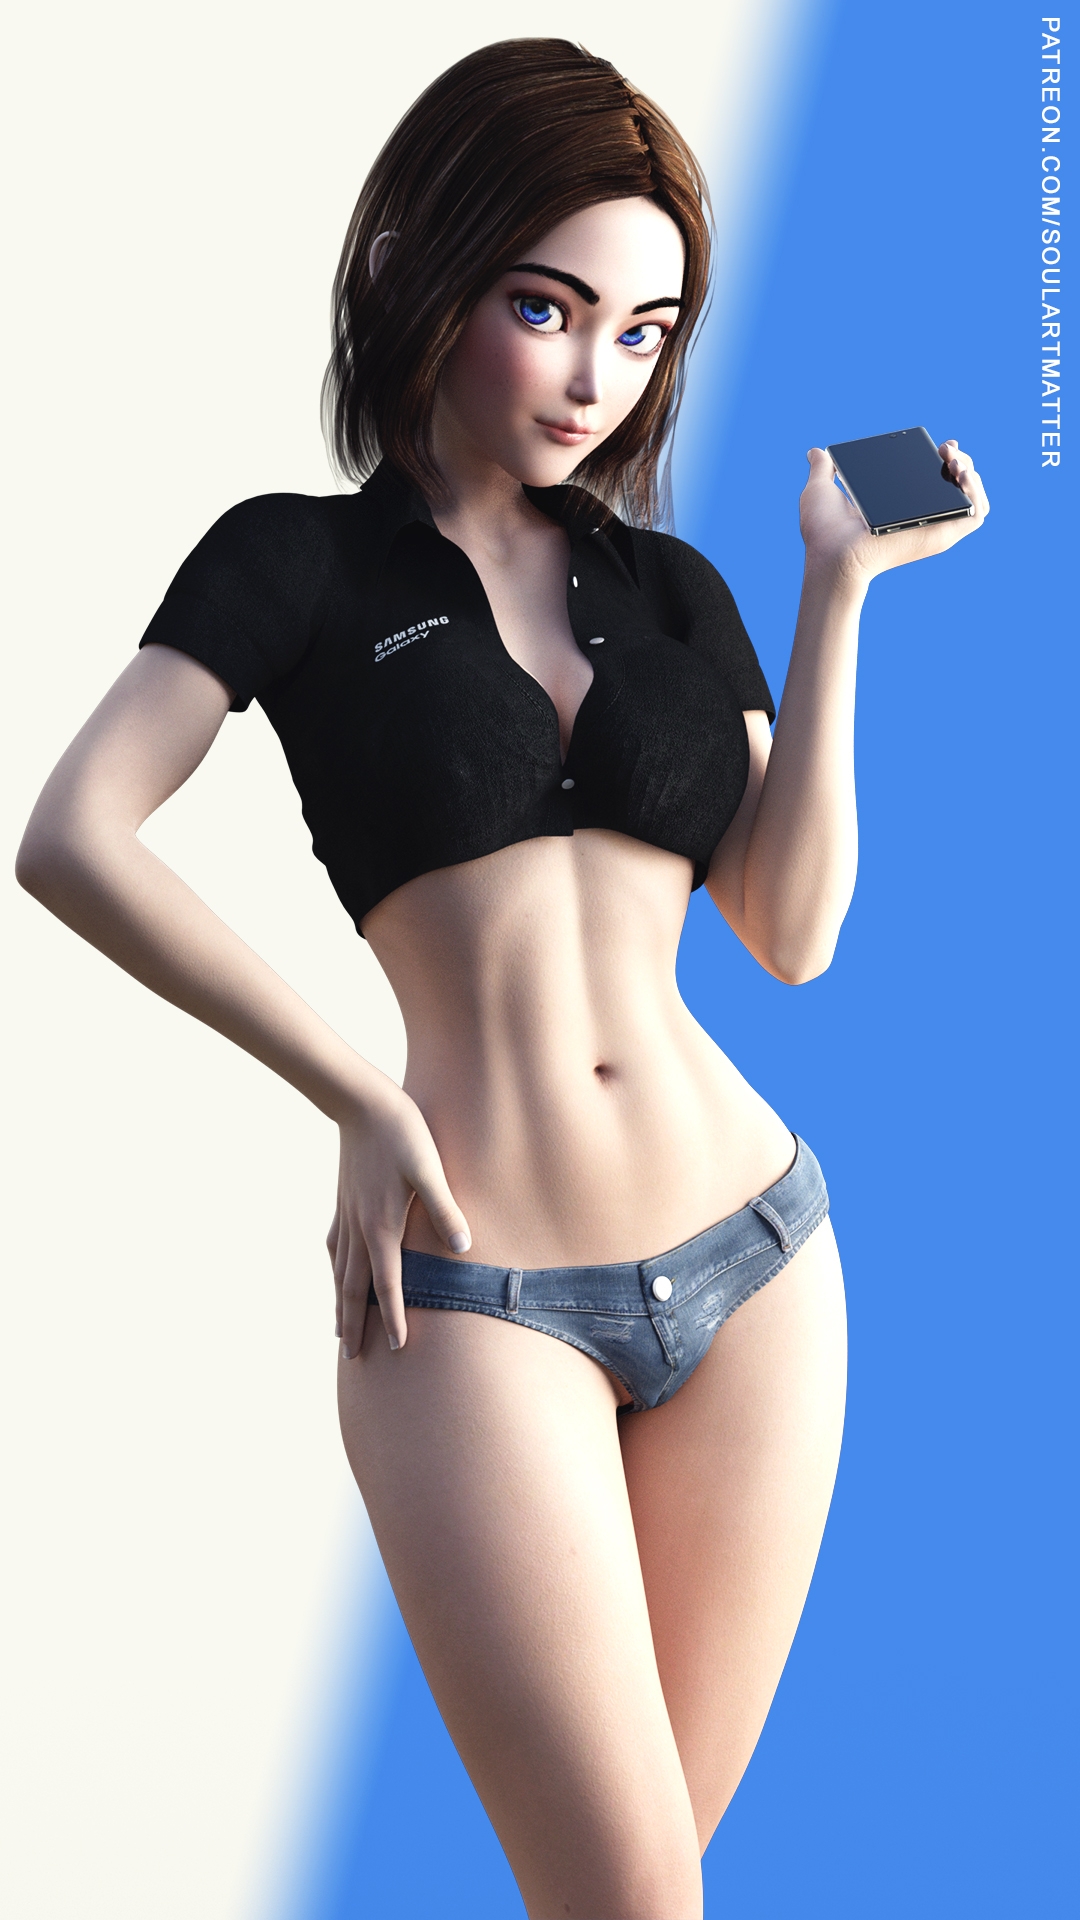 Samsung Sam (Non-nude version)